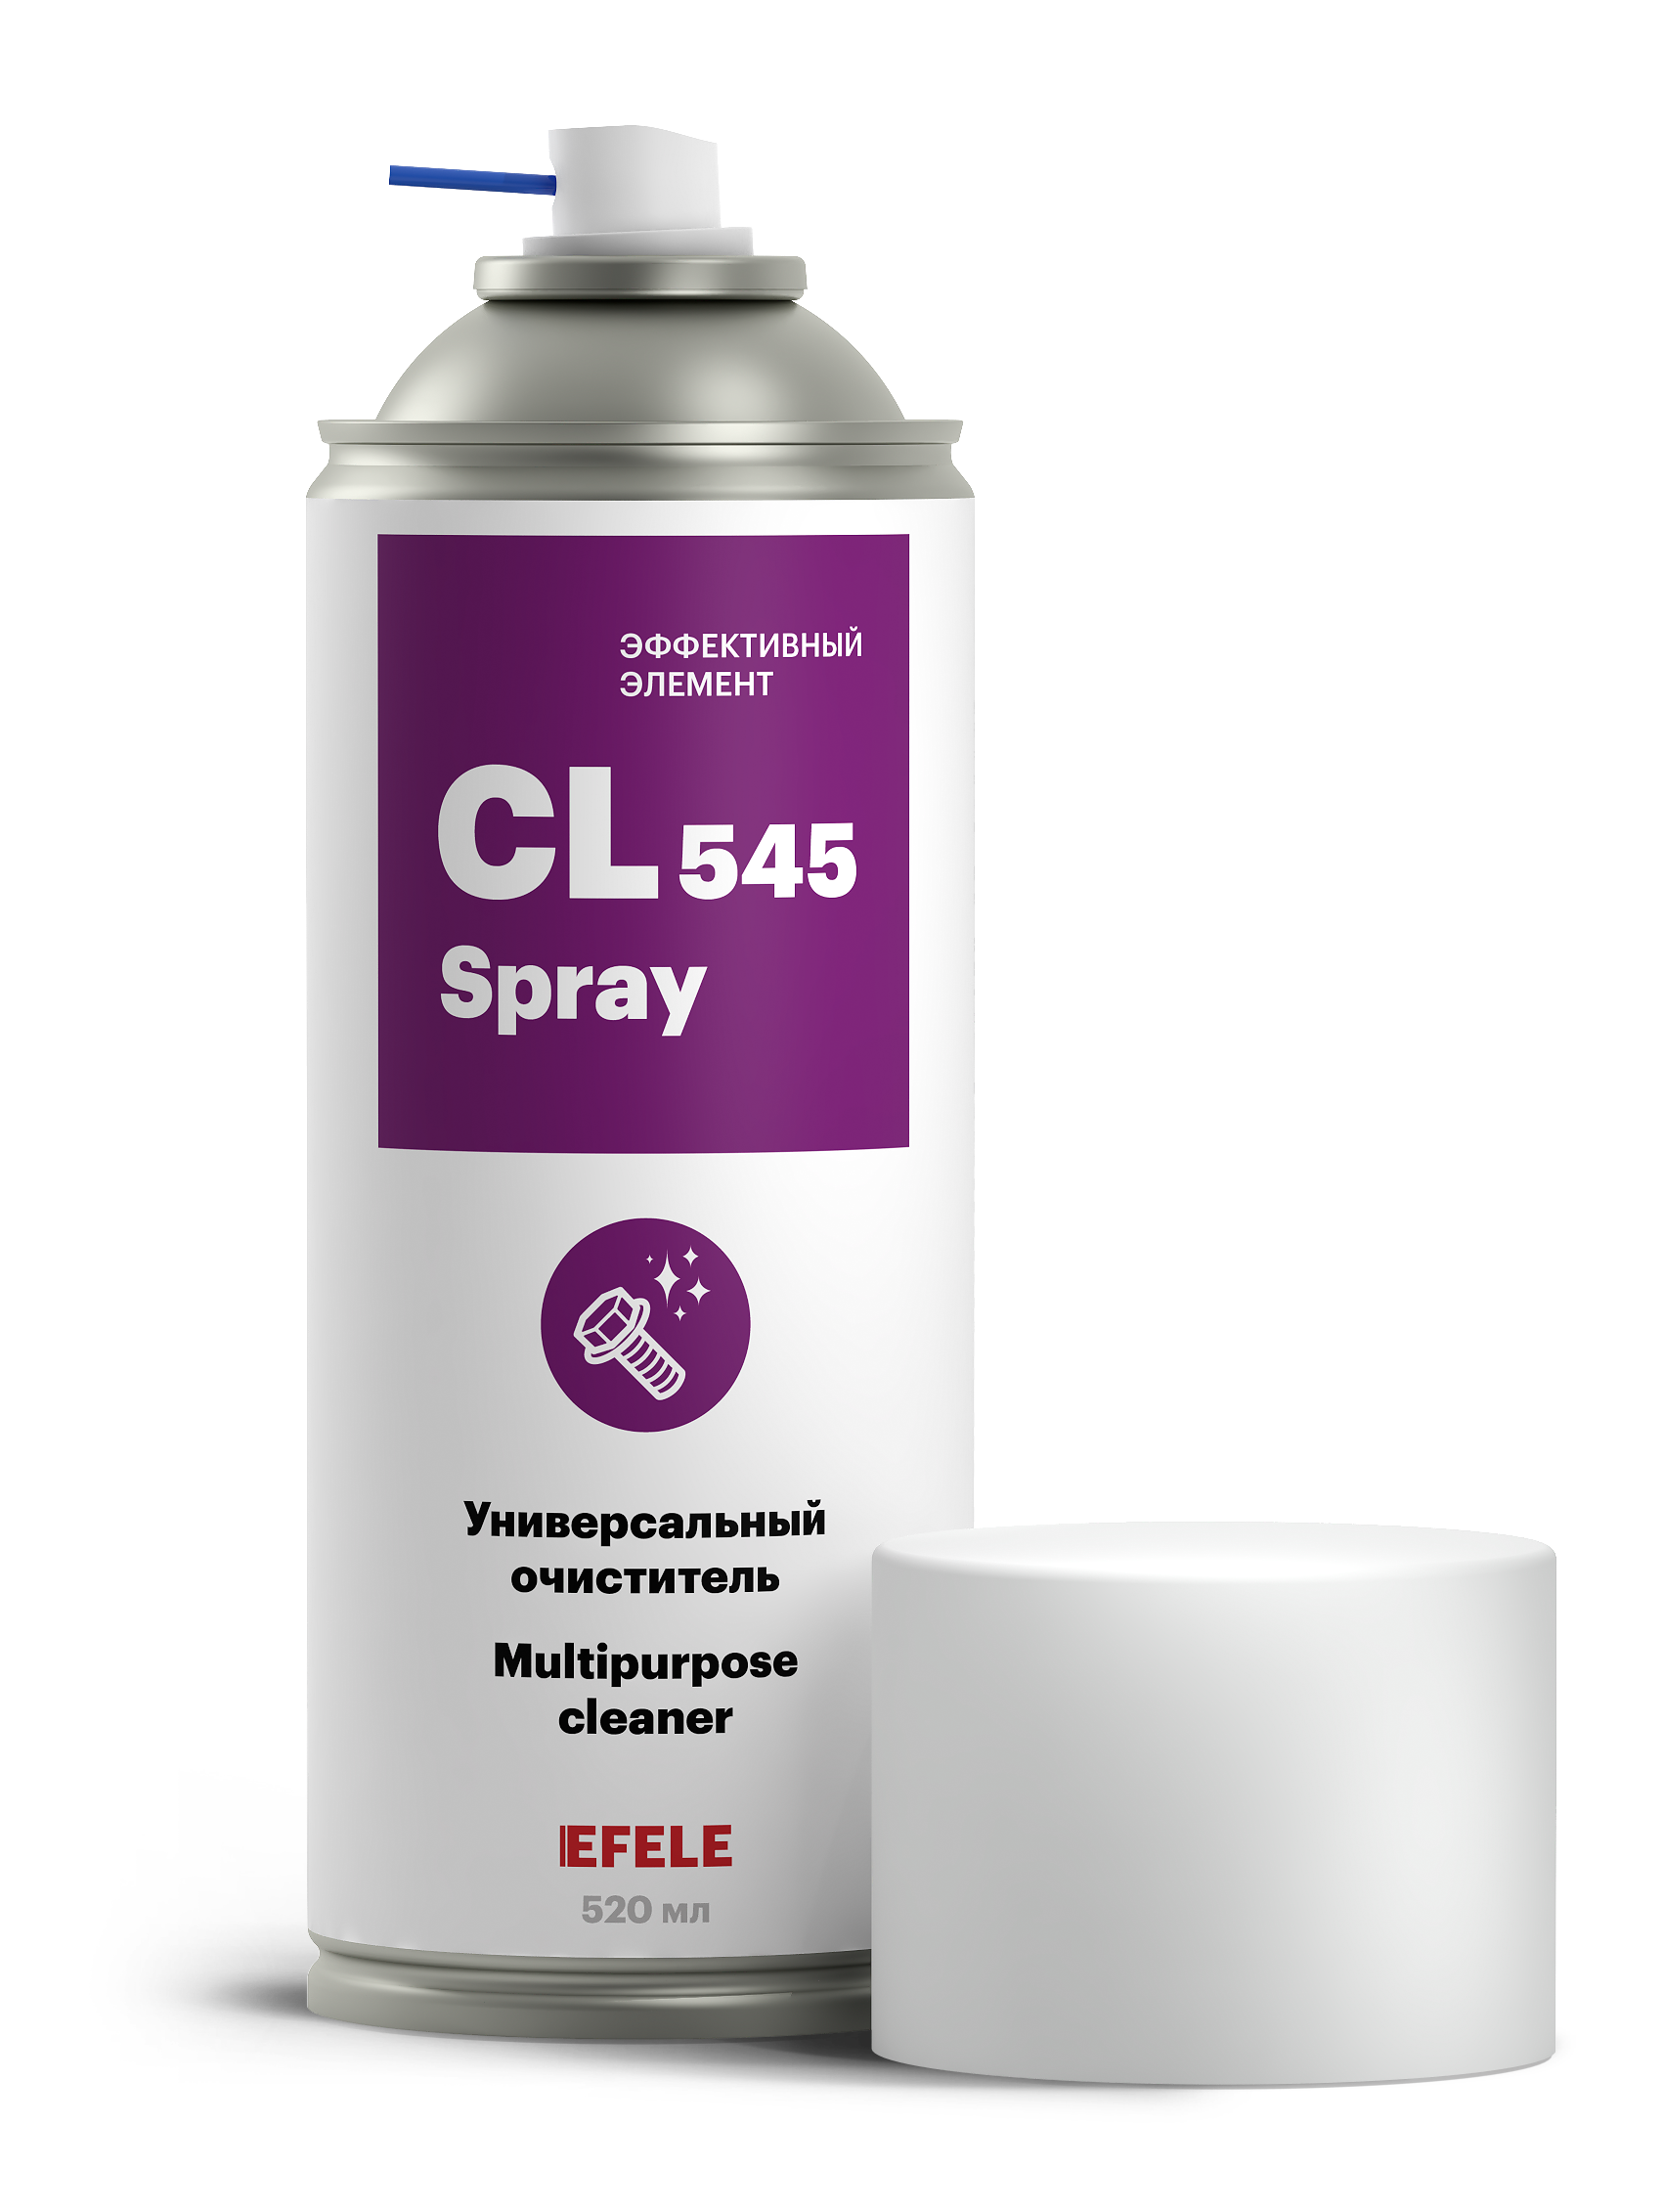 Очиститель Efele CL-545 